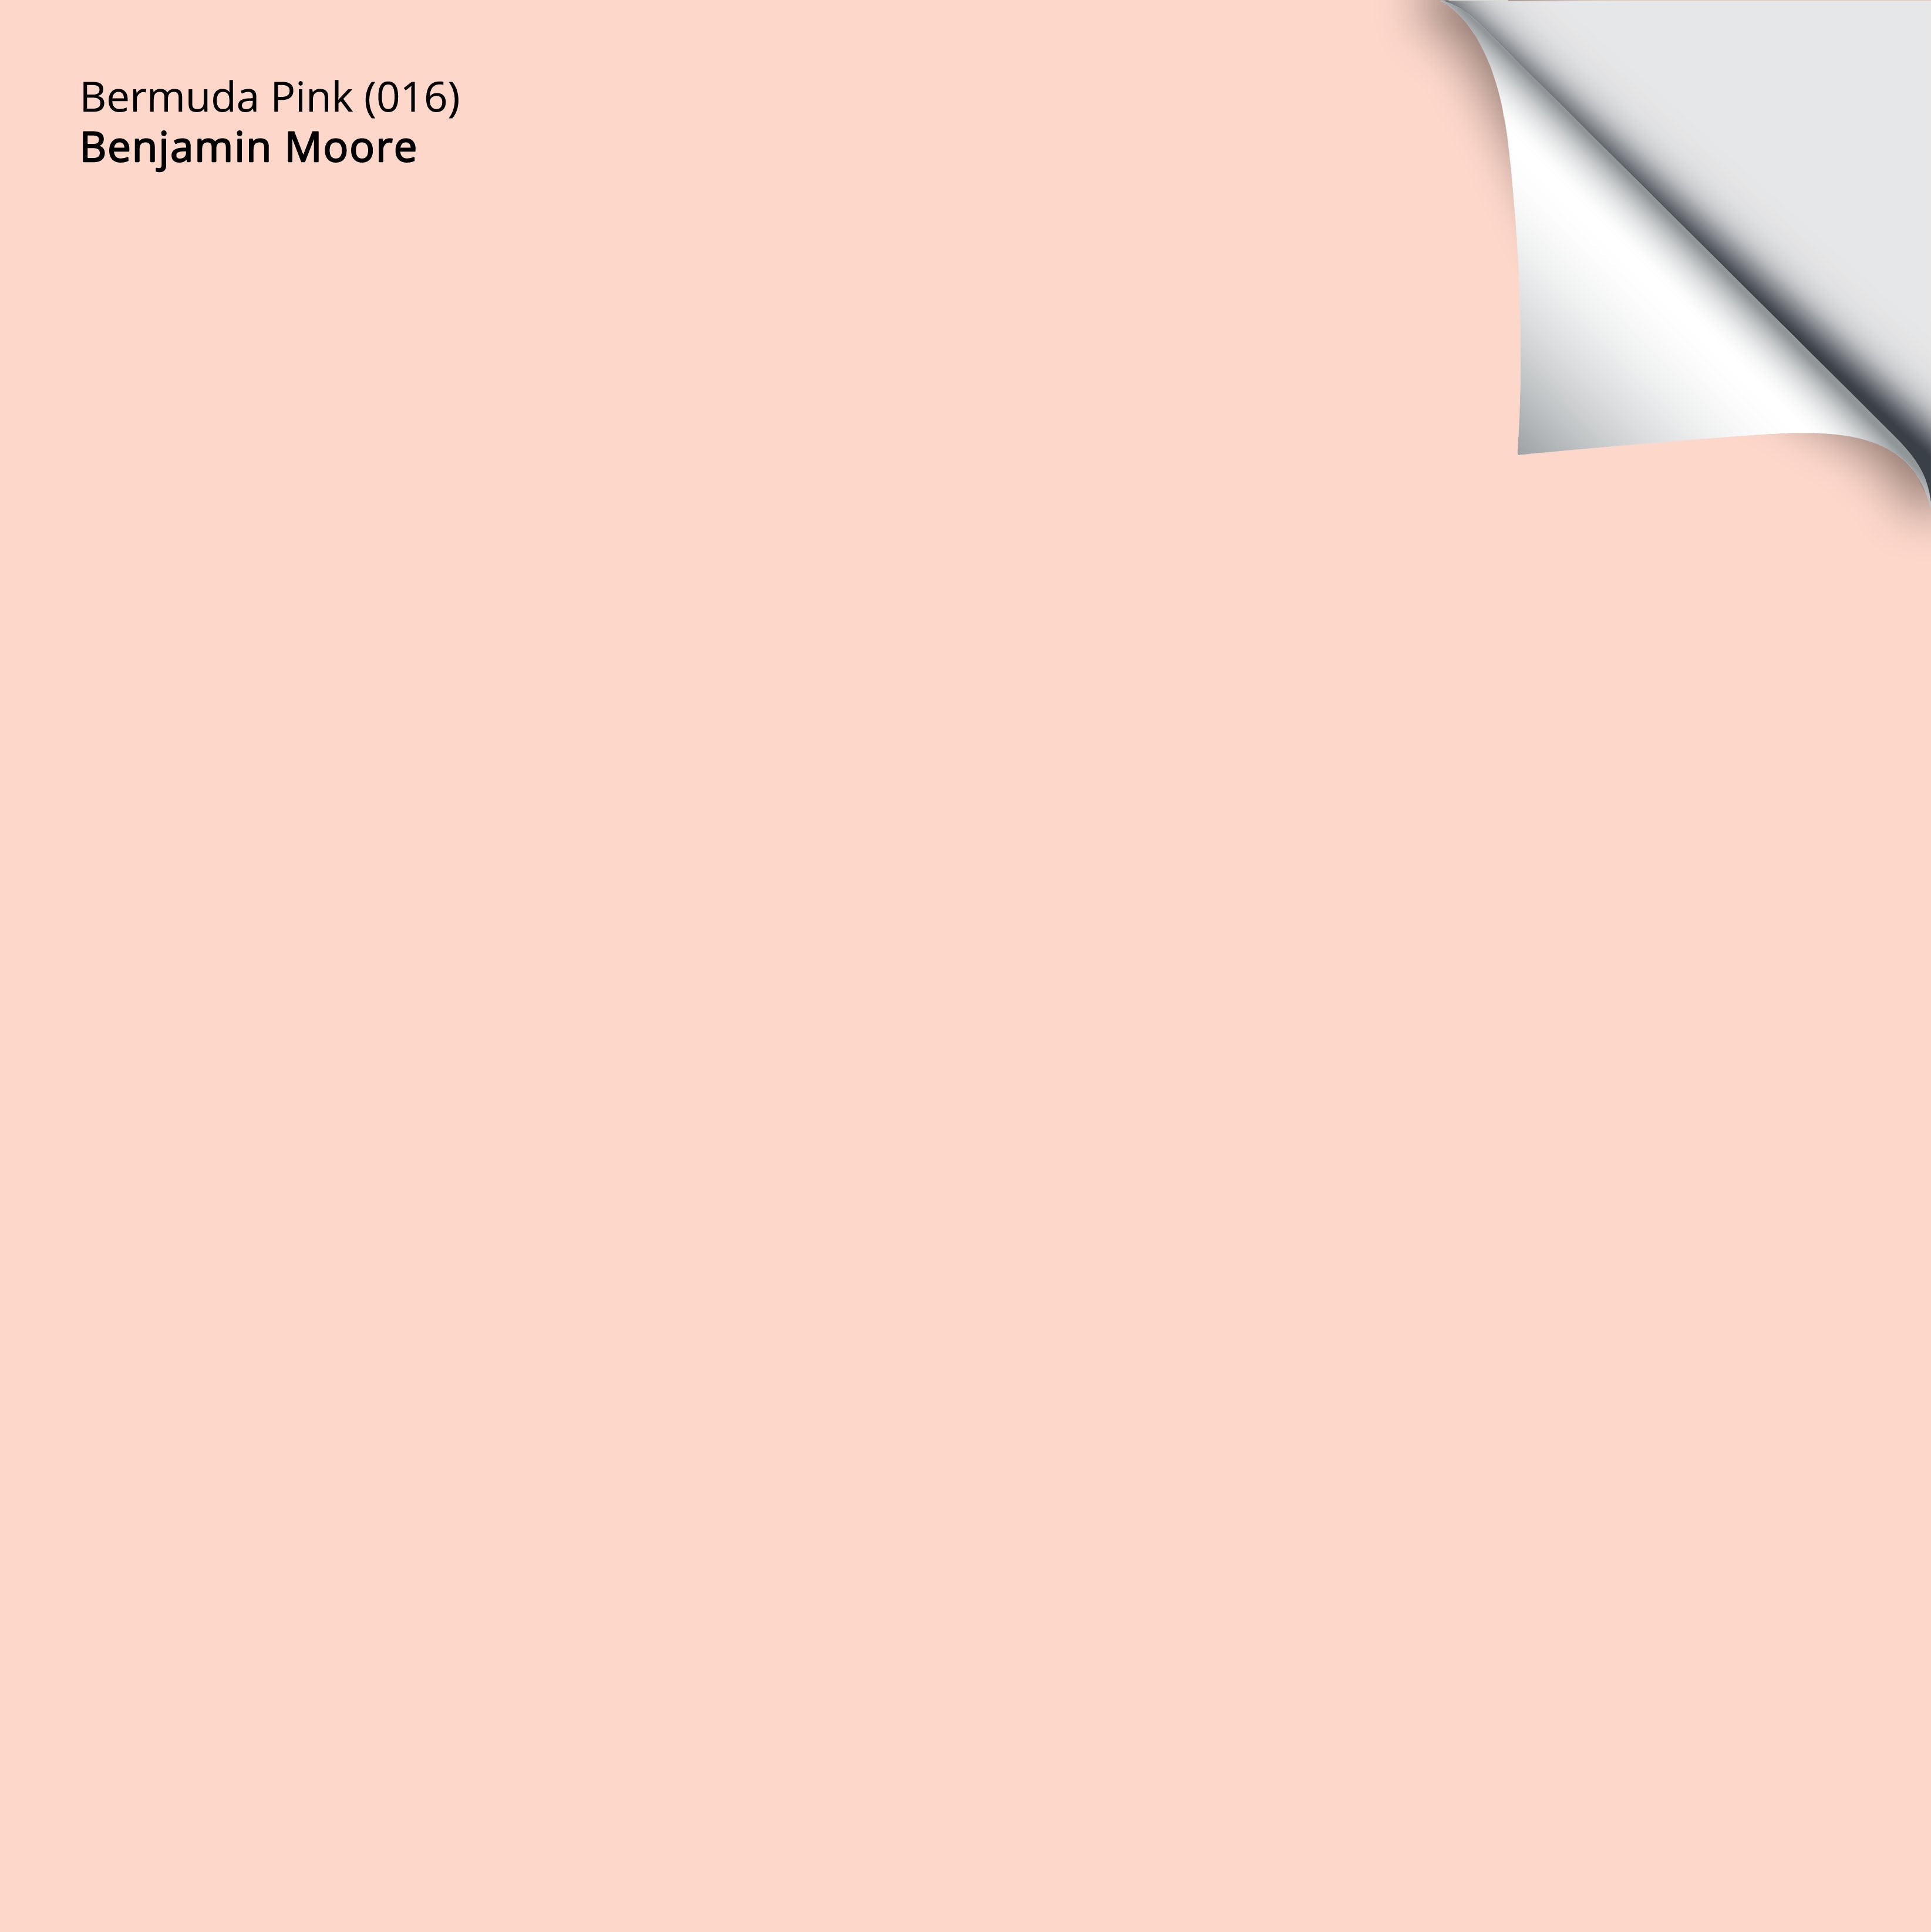 Bermuda Pink (016): 9x14.75 – Benjamin Moore x Samplize